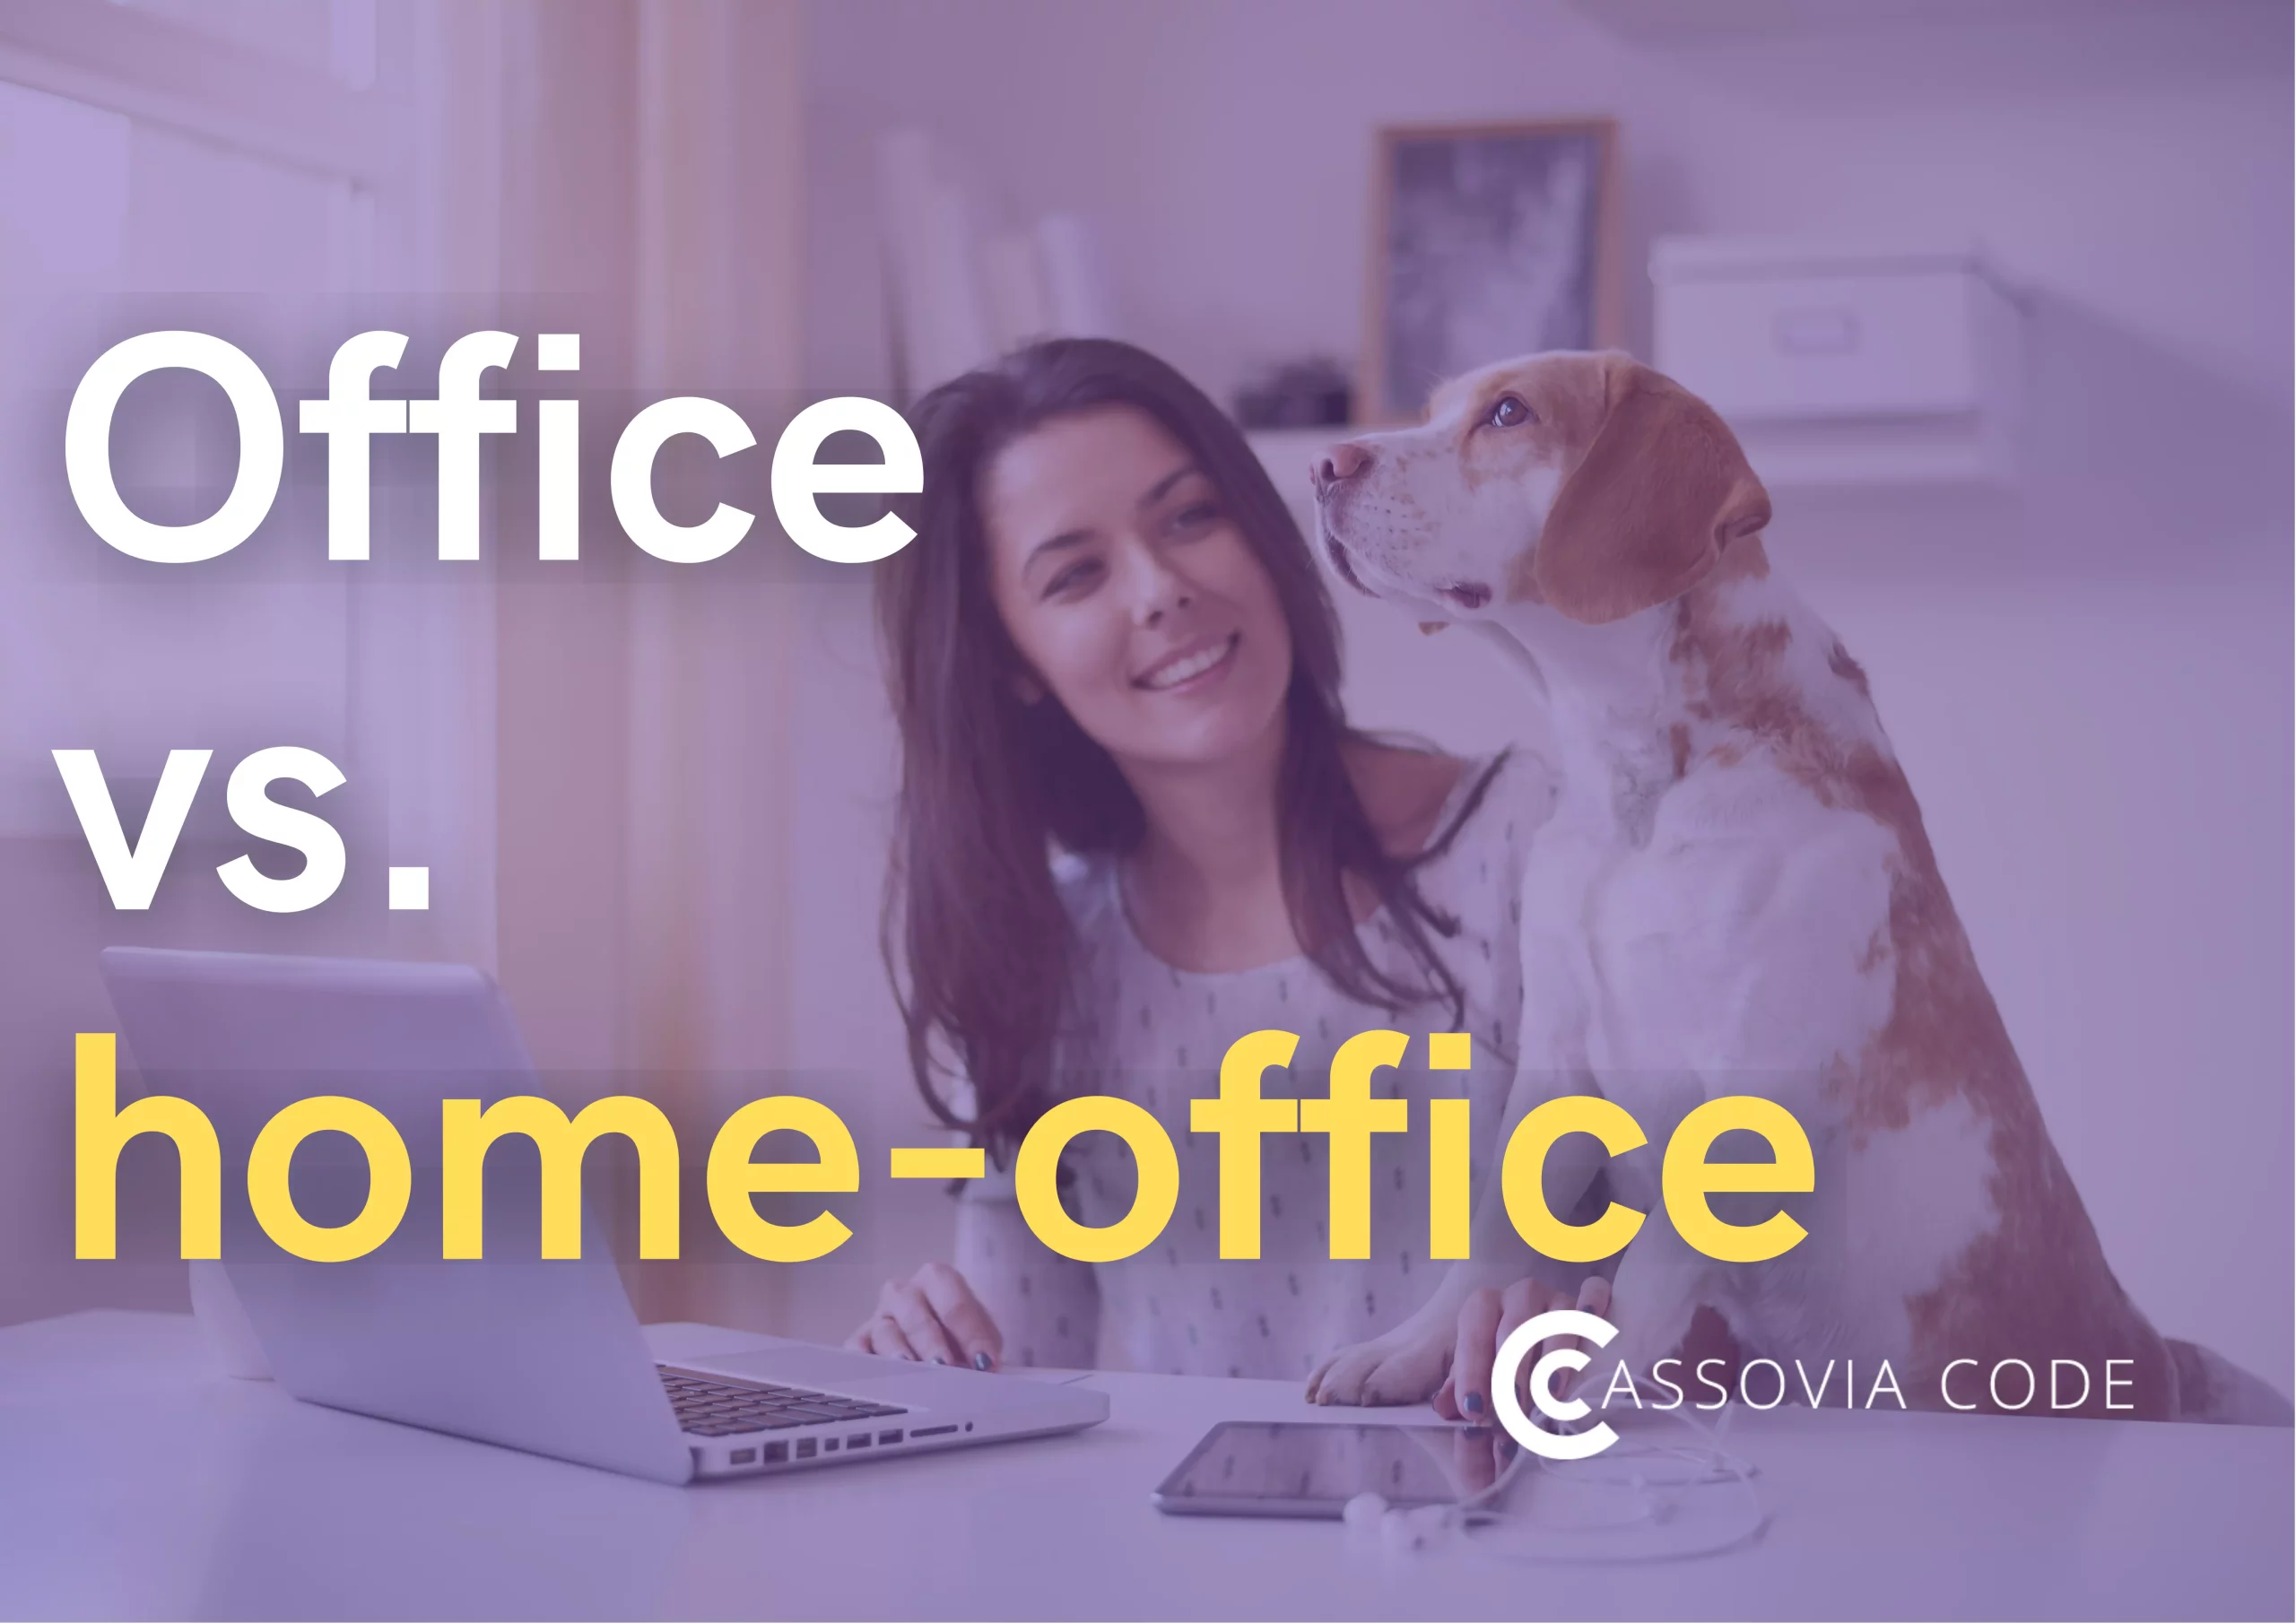 Office vs. home-office